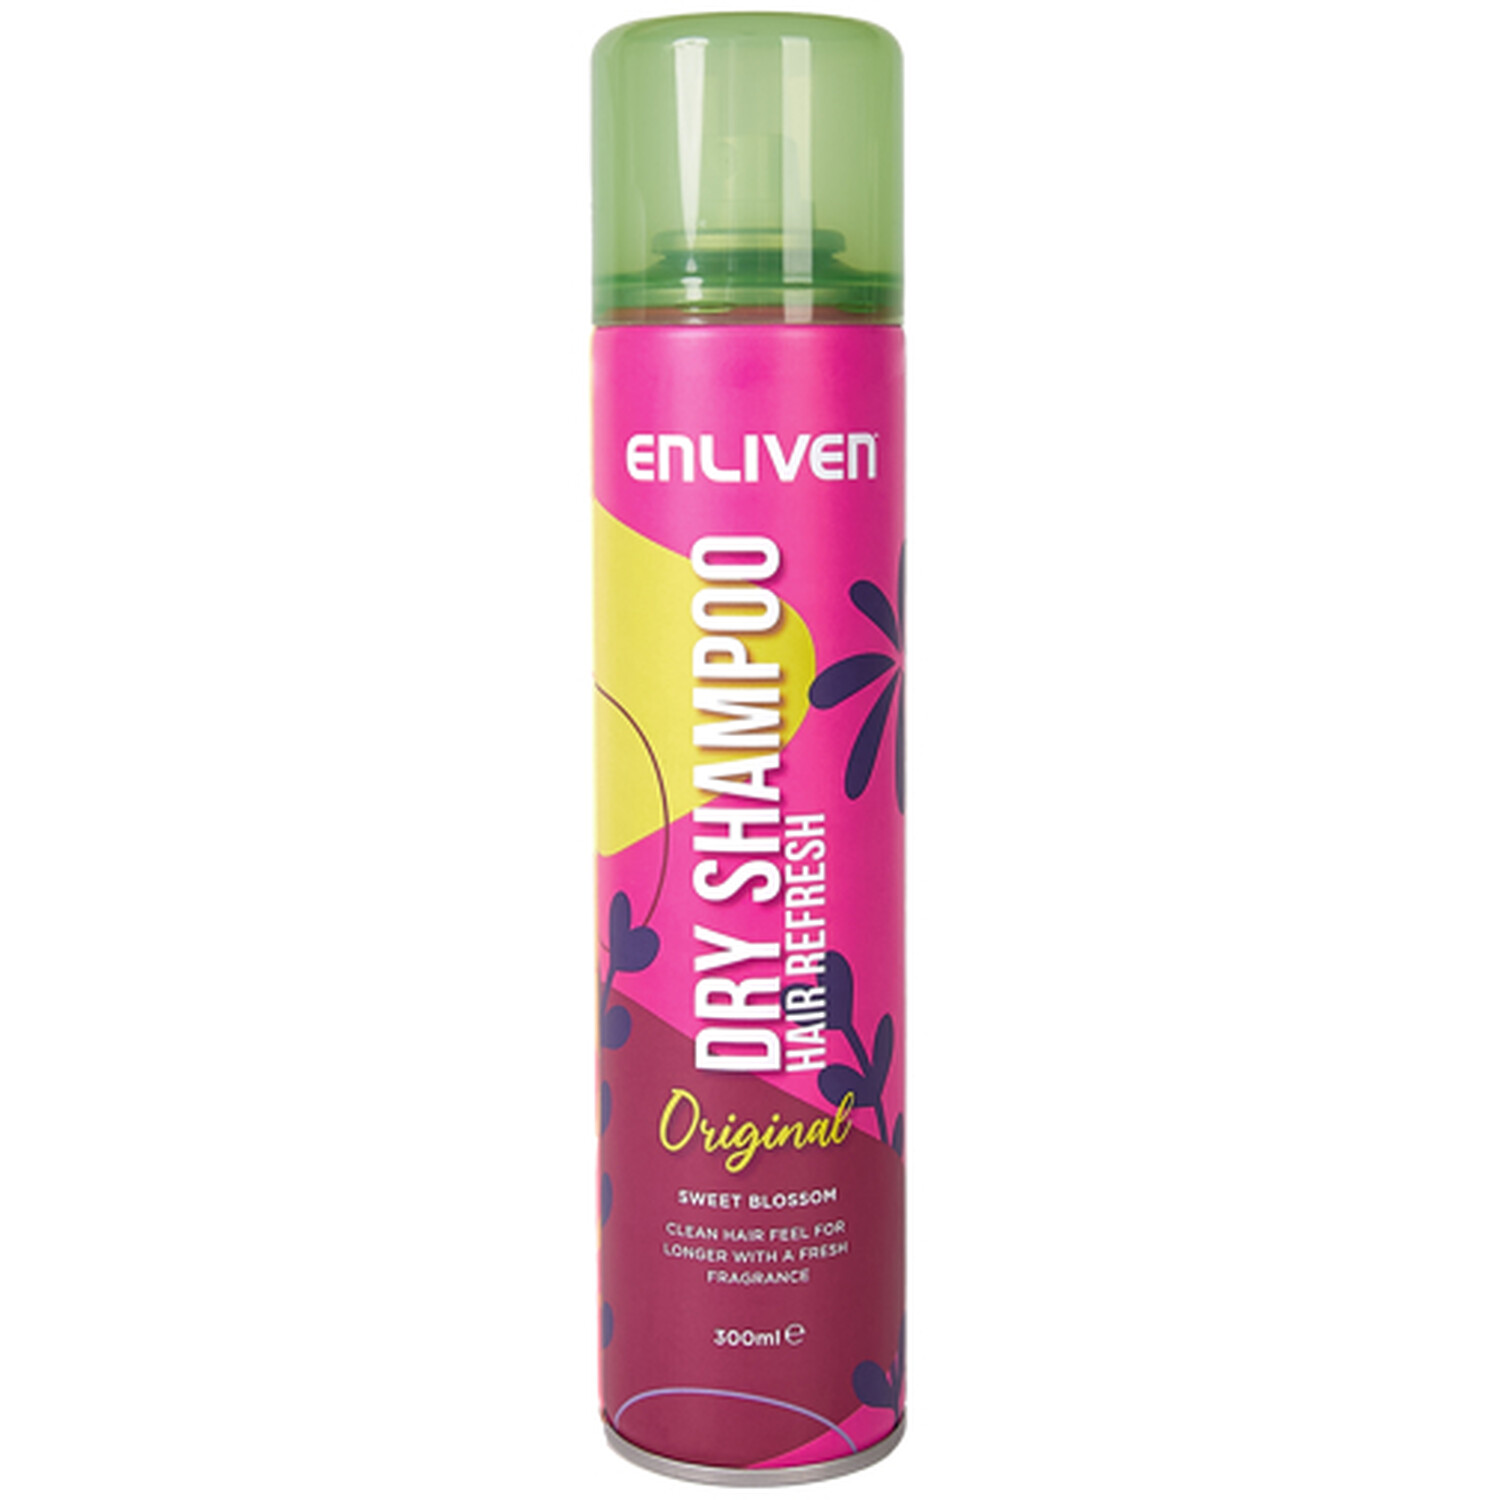 Enliven Dry Shampoo 300ml - Original Image